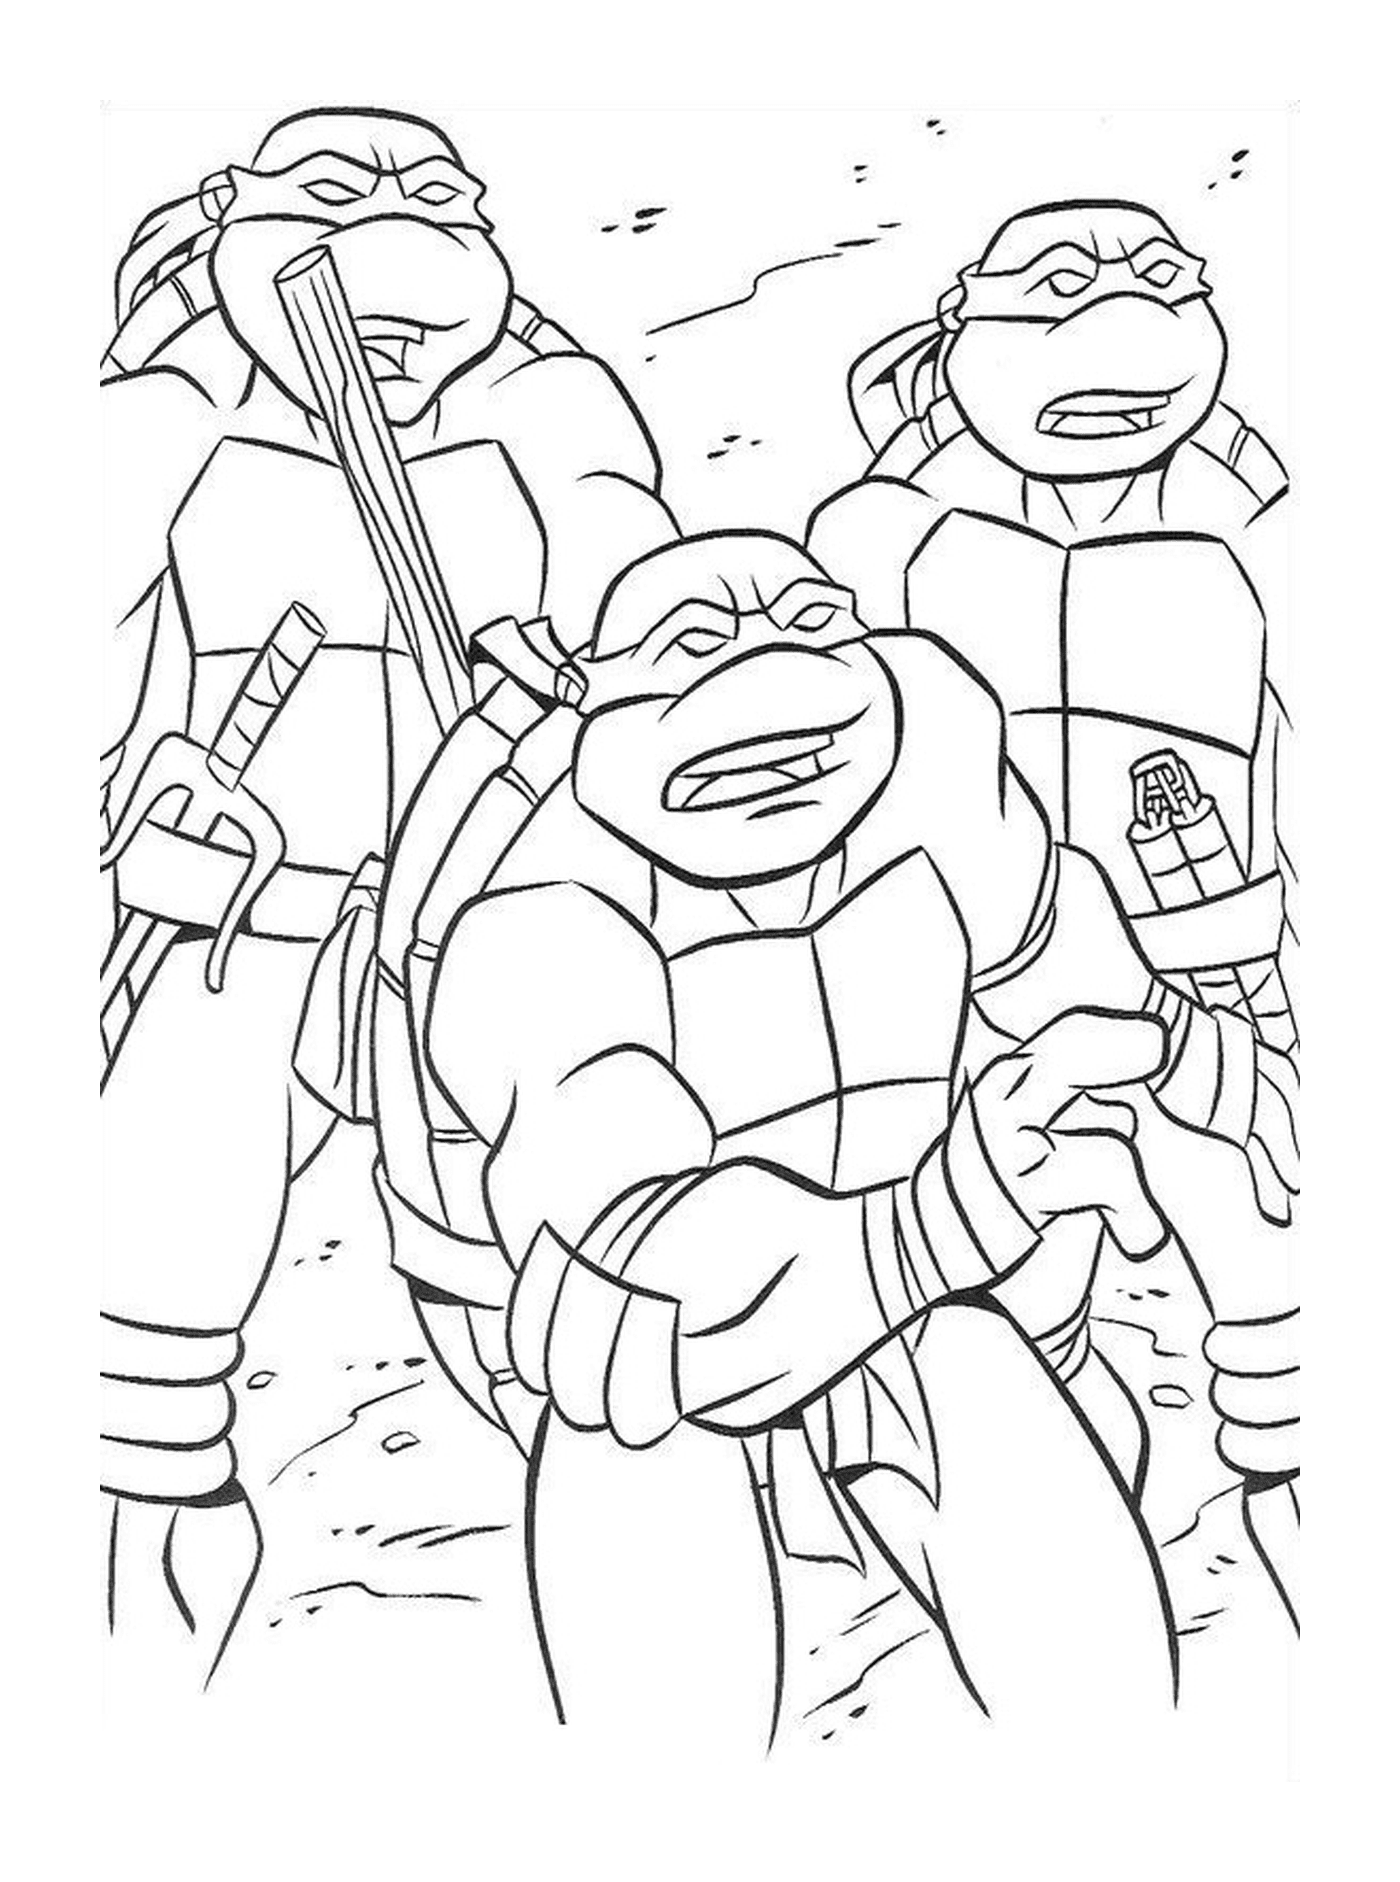  团结忍者海龟集团 